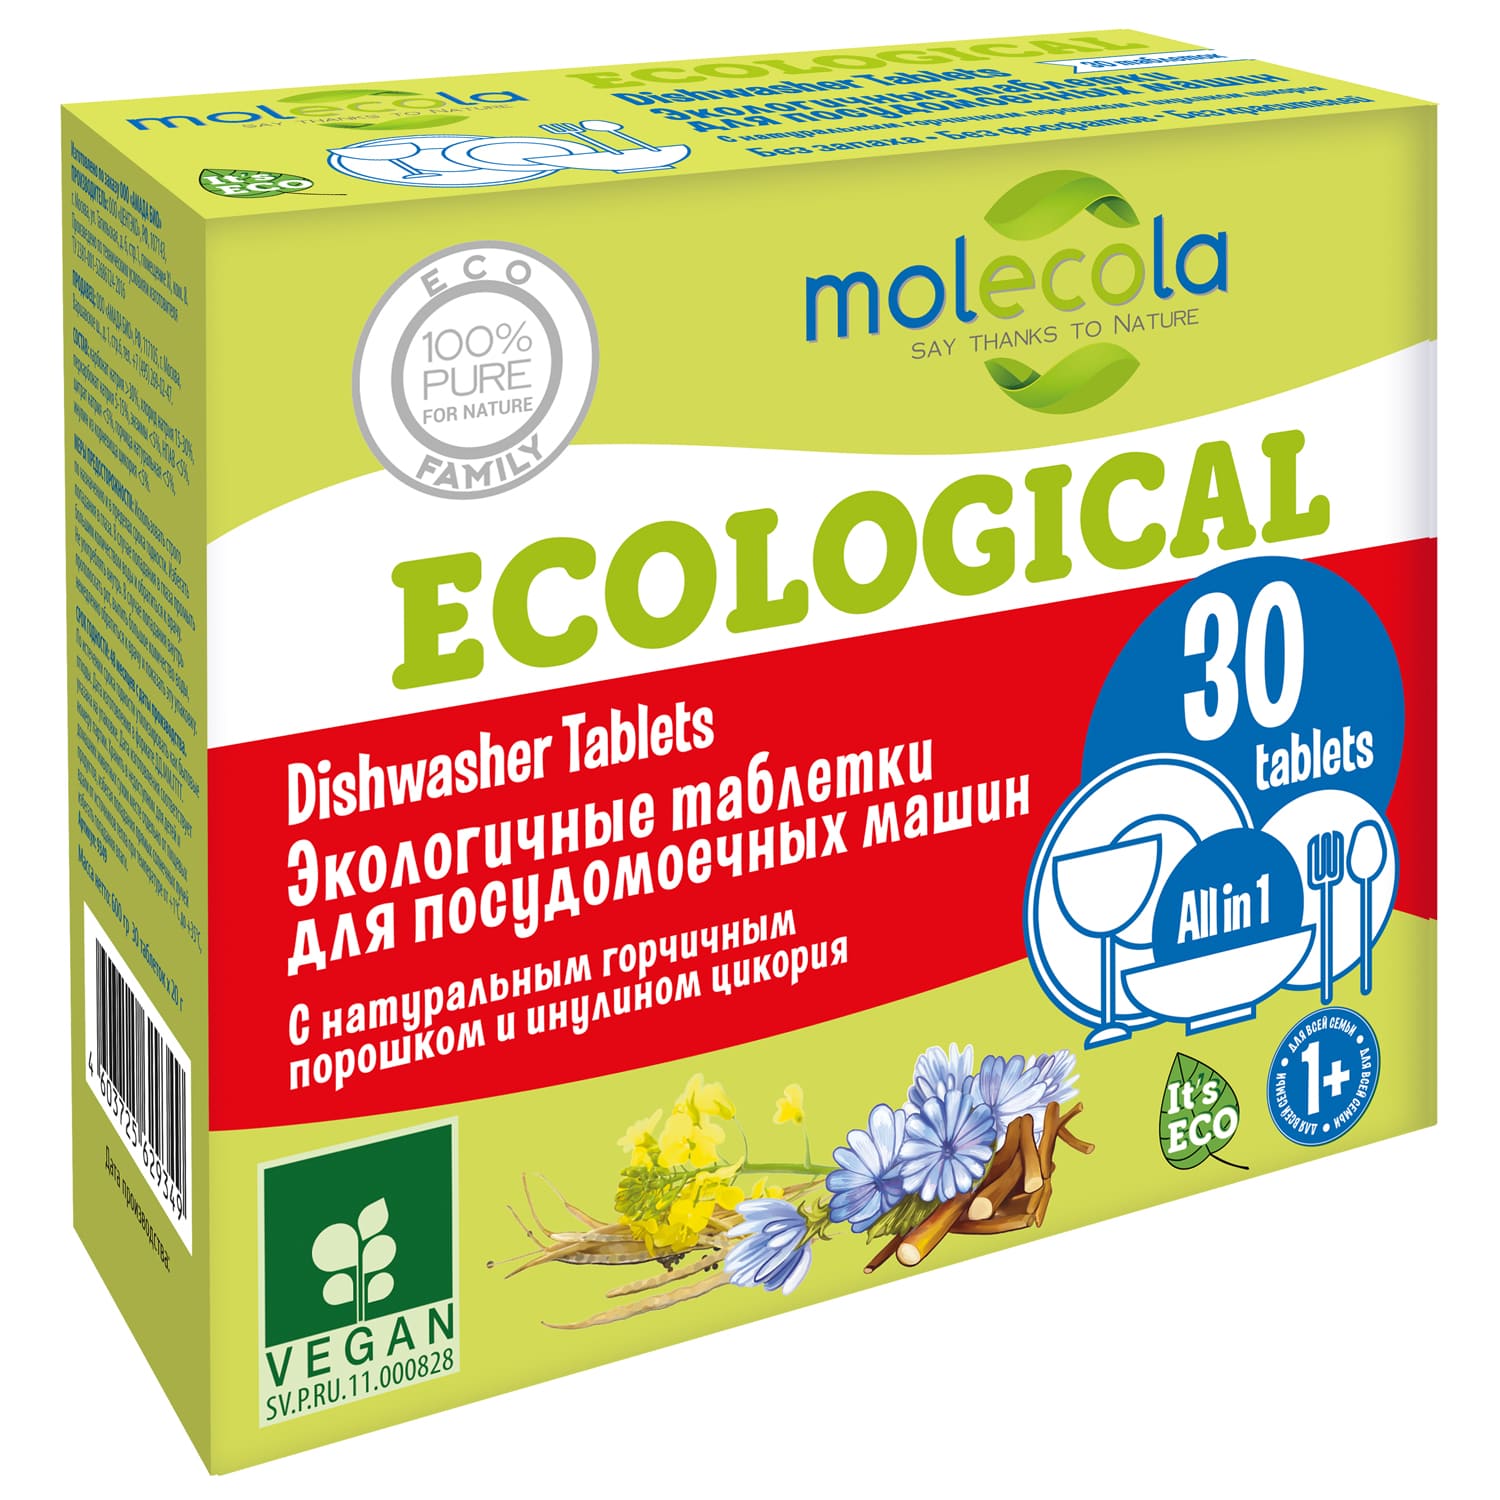 molecola экологичные таблетки для посудомоечной машины 30 шт molecola для мытья посуды Molecola Экологичные таблетки для посудомоечной машины, 30 шт (Molecola, Для мытья посуды)